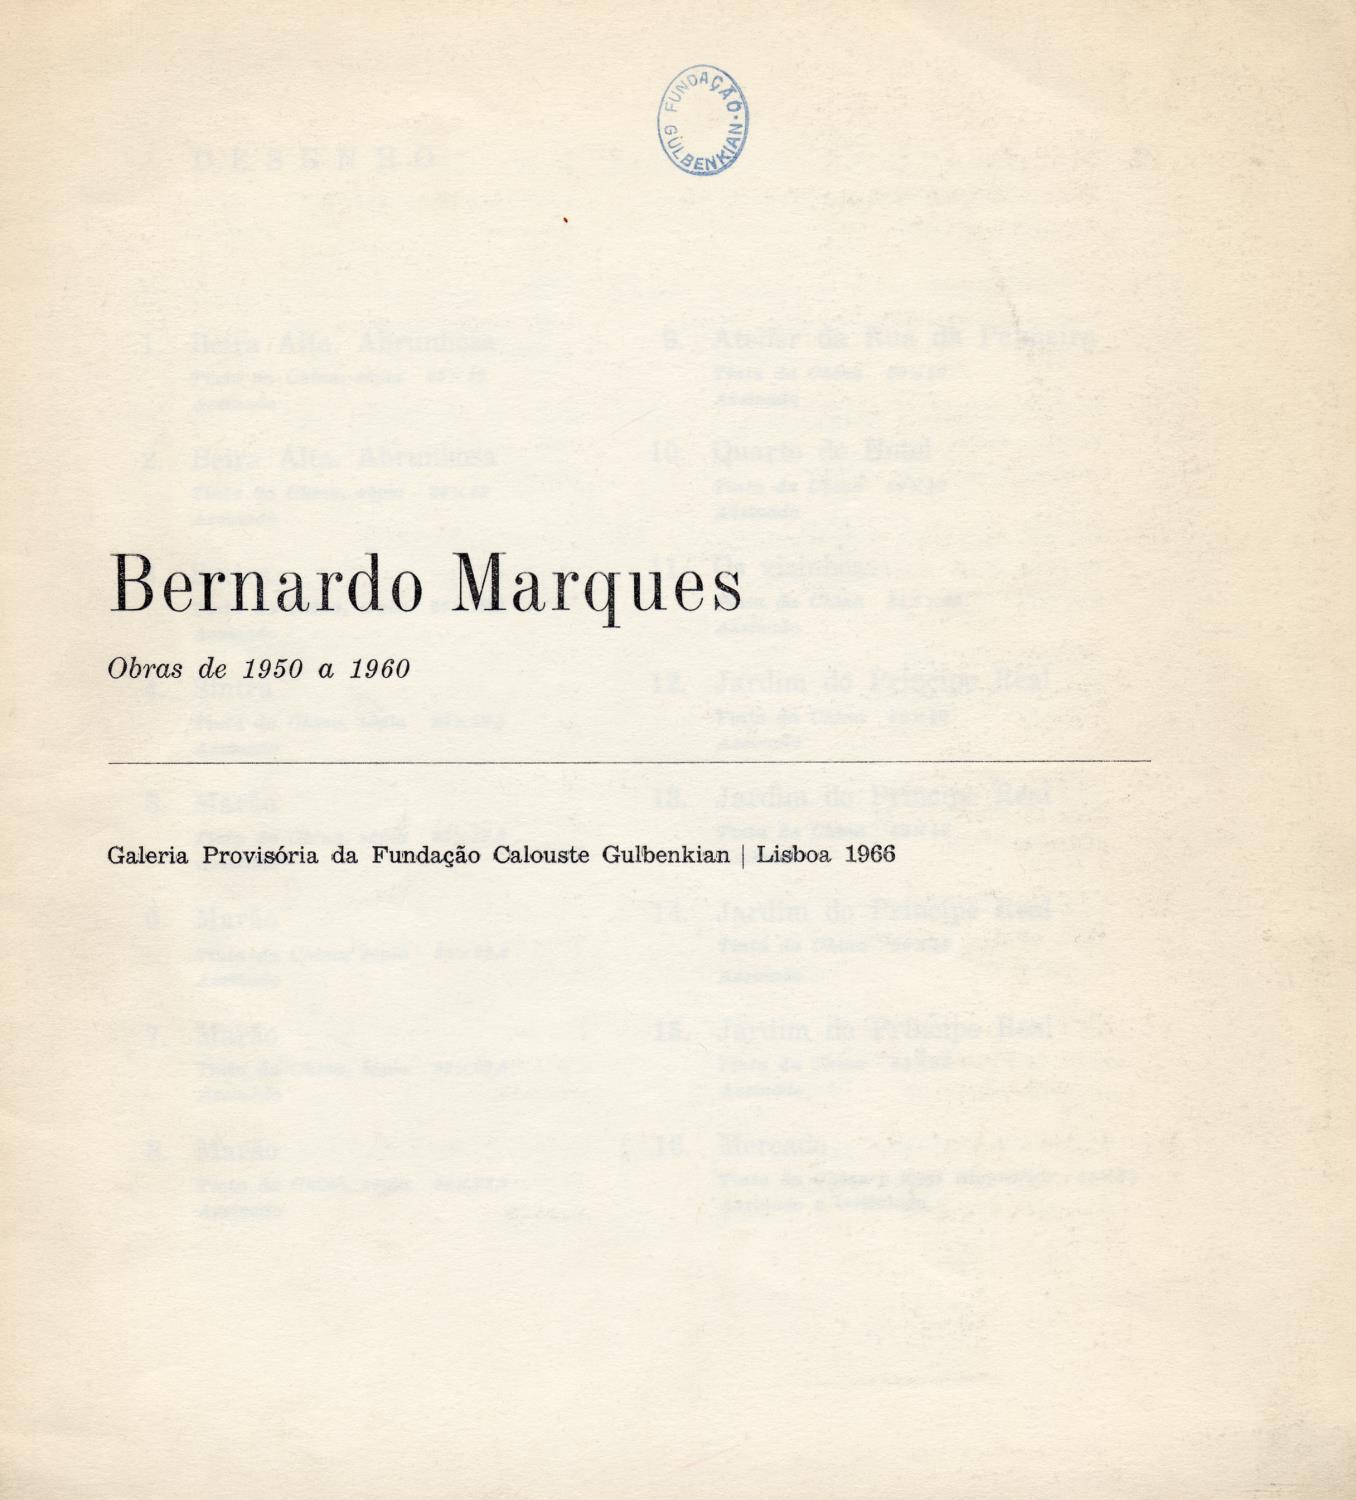 Bernardo Marques. Obras de 1950 a 1960